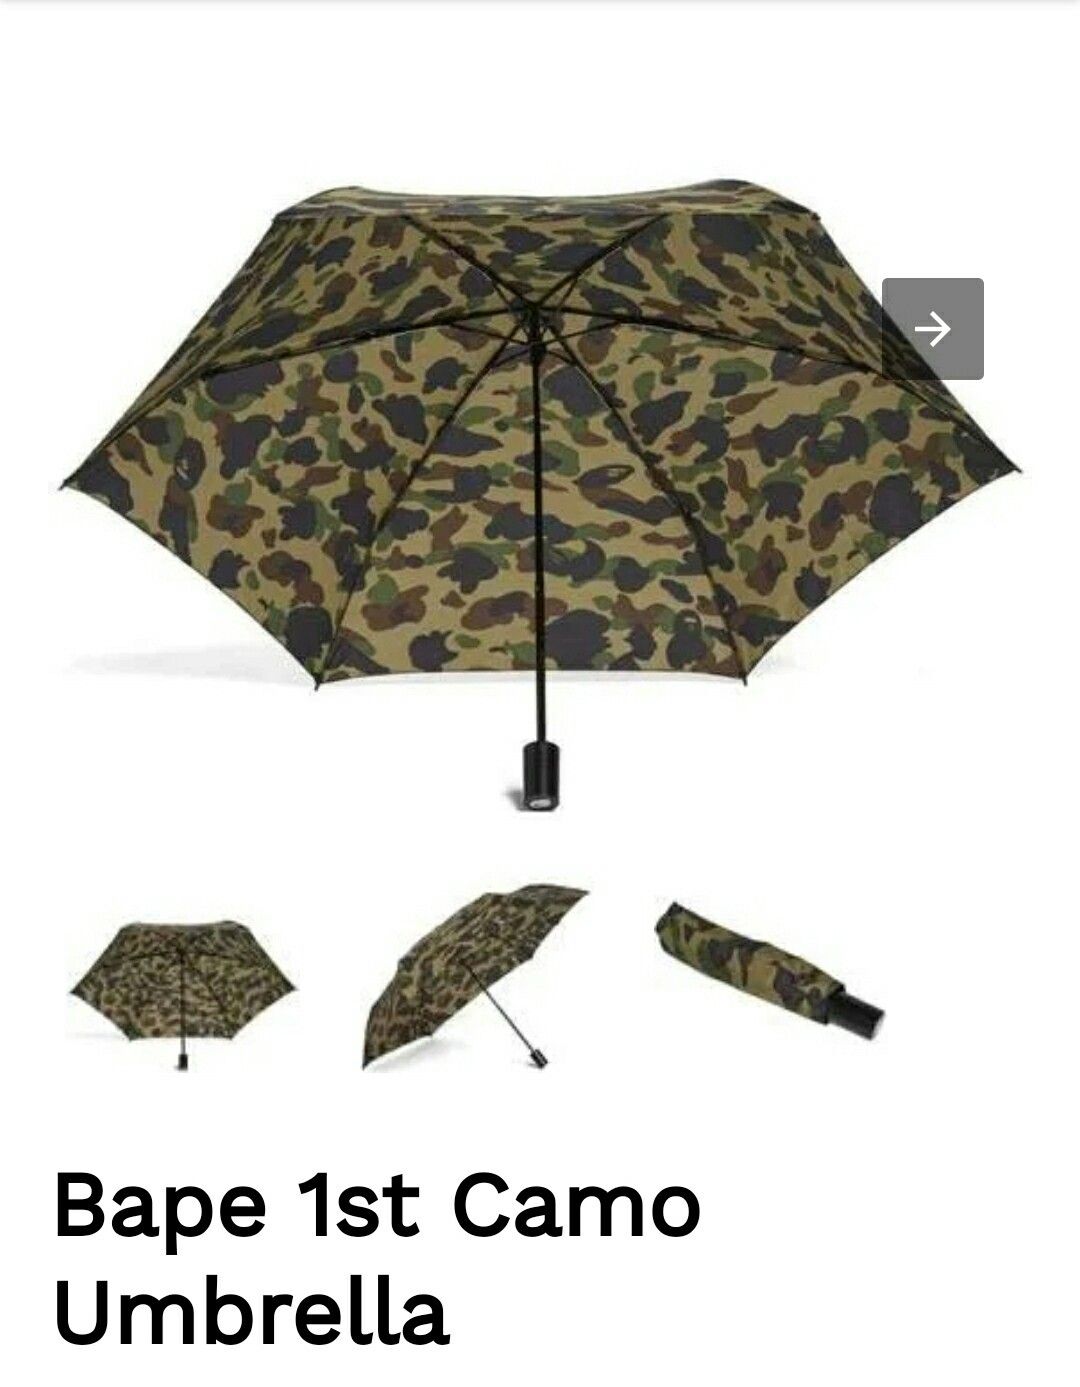 Bape umbrella